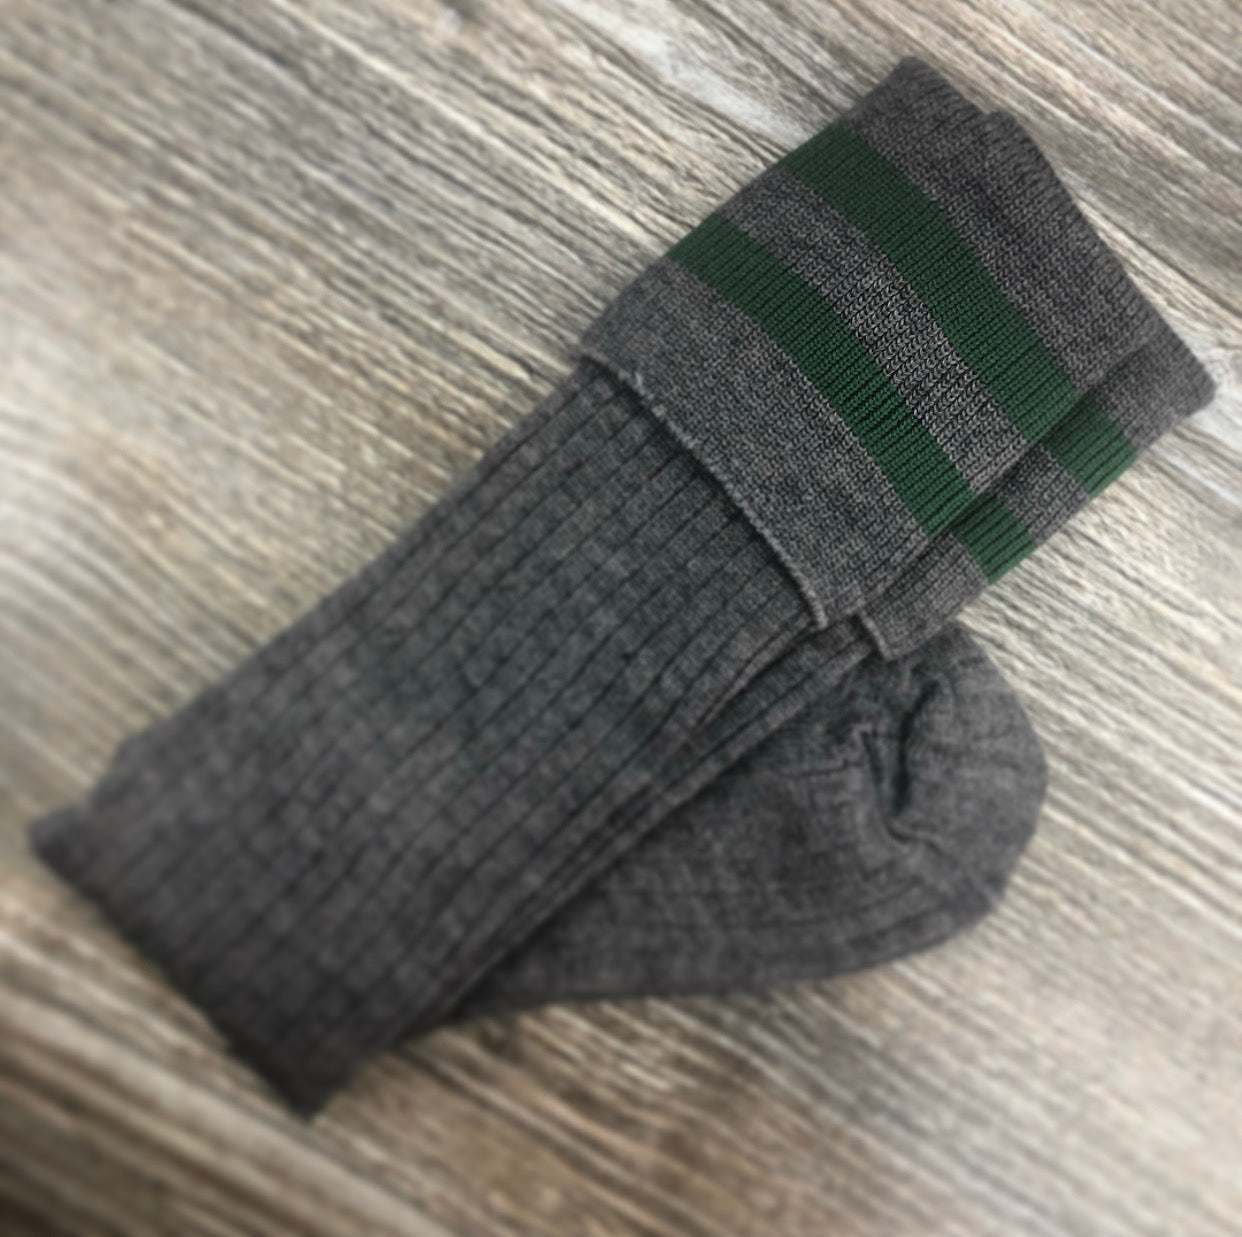 Grey Long Socks with Bottle Green Stripe